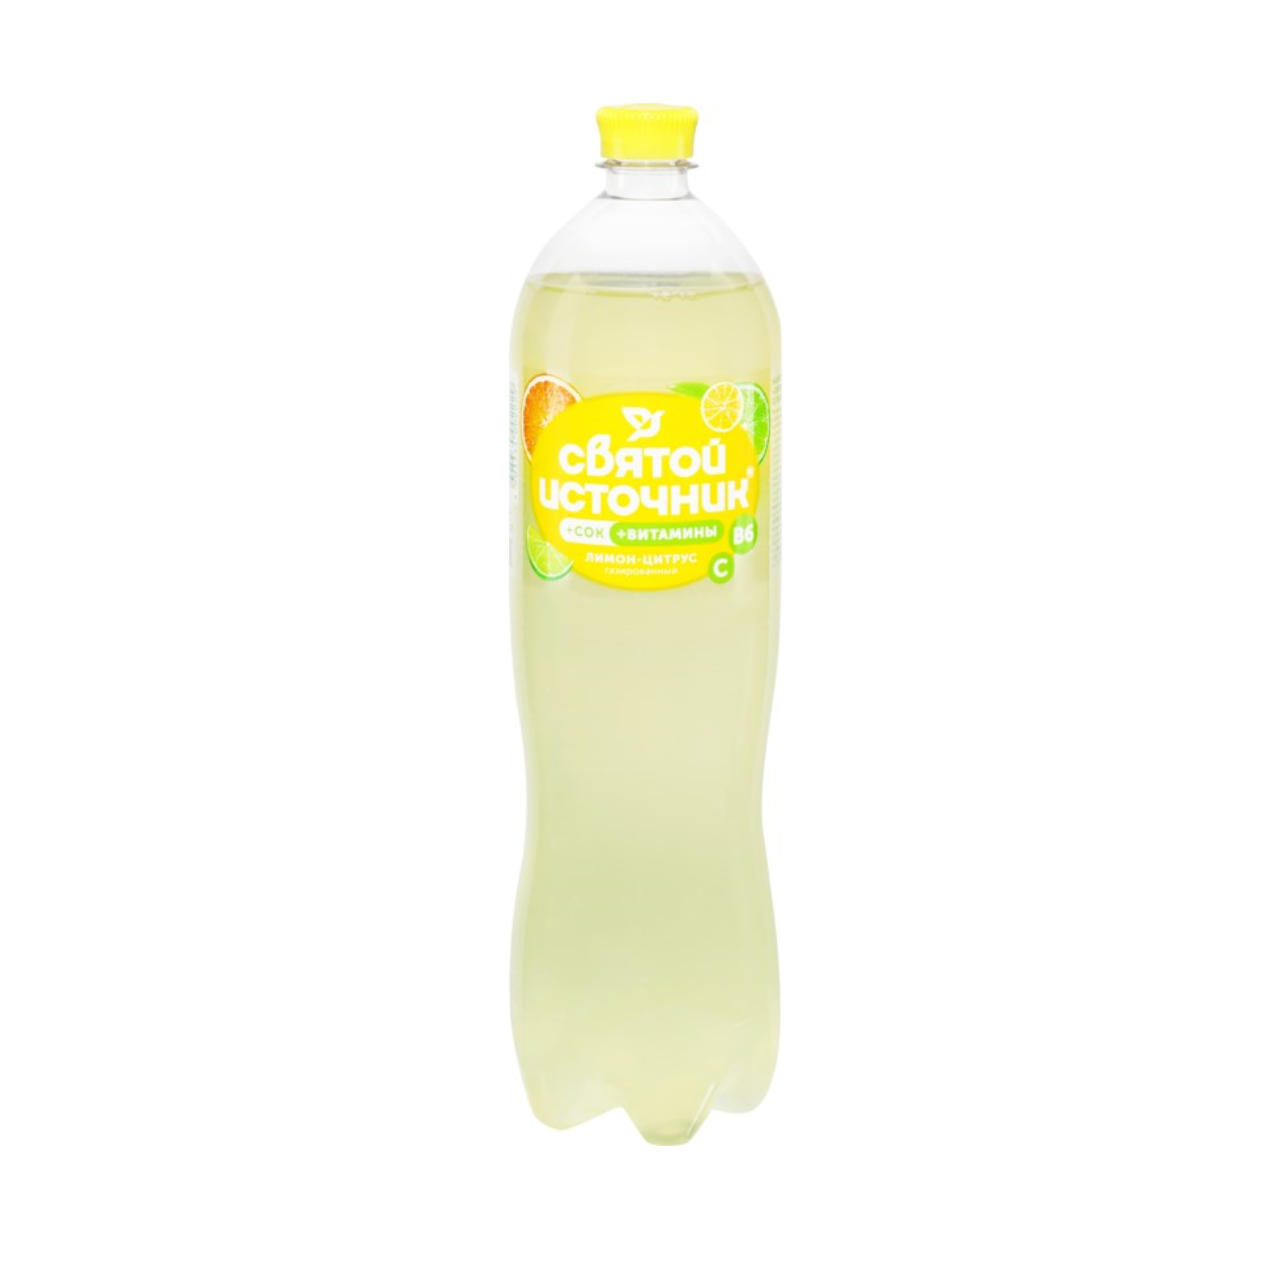 Пит вода Святой источник газ 1,5л ПЭТ сок лимон/цитрус